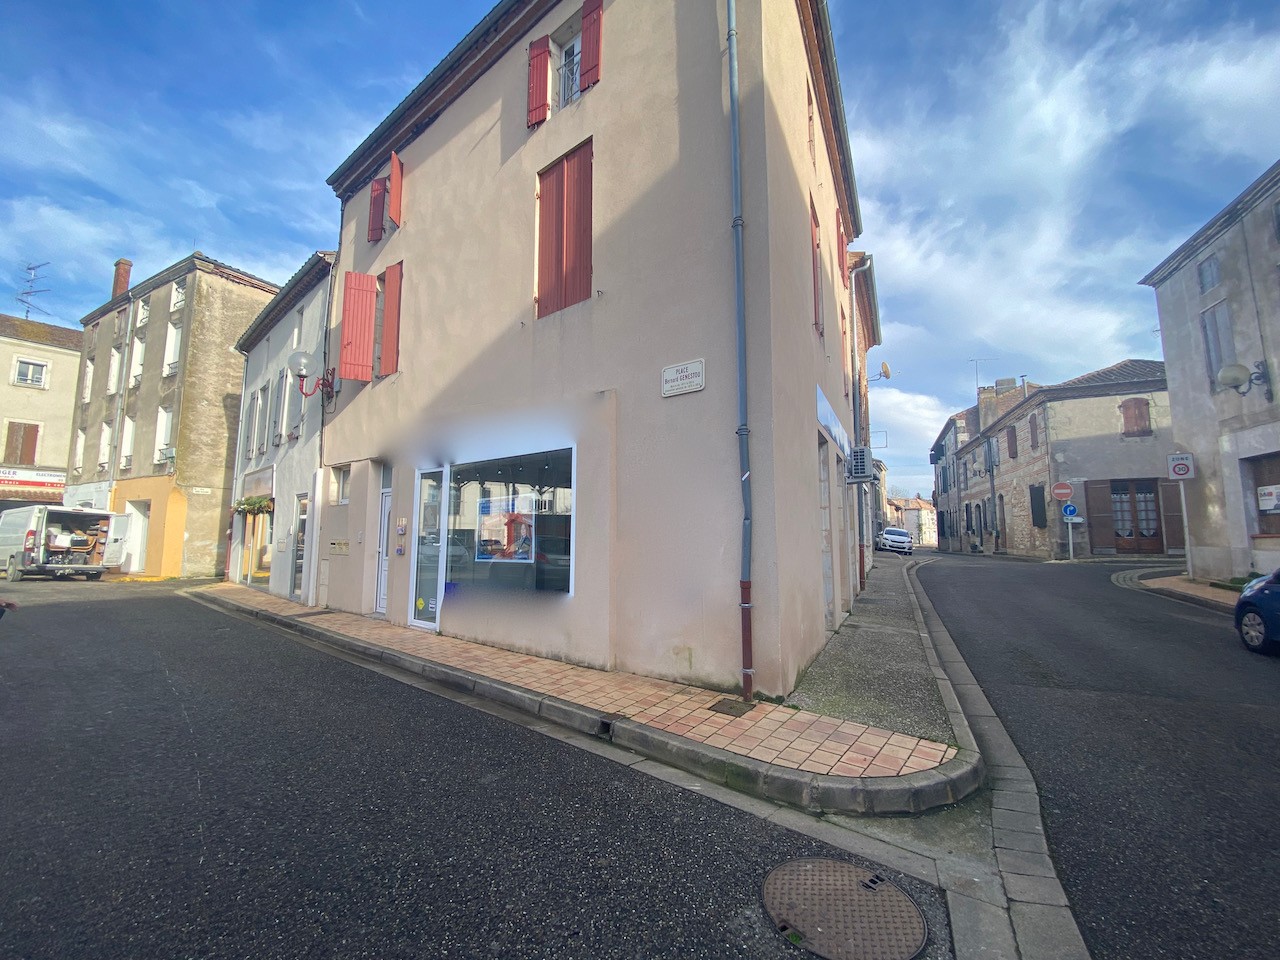 Location Garage / Parking à Castelmoron-sur-Lot 1 pièce